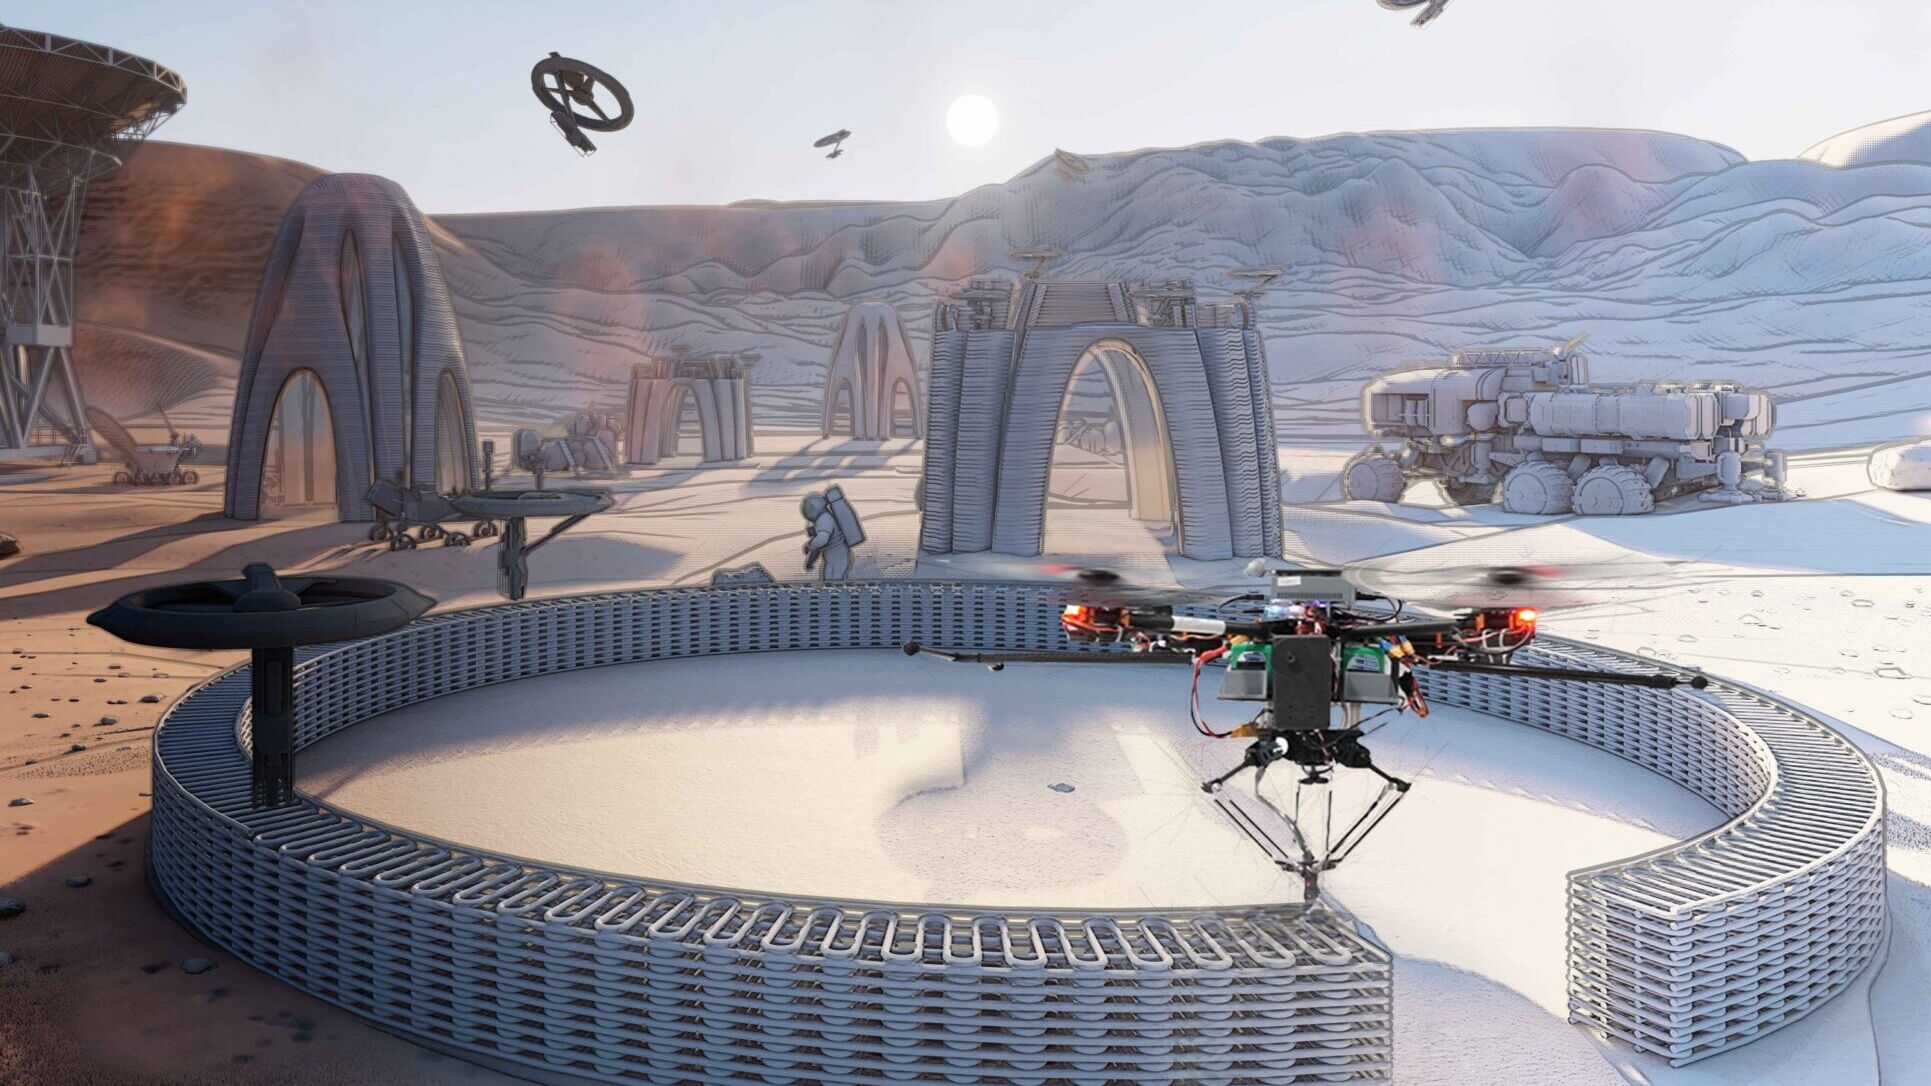 Droni collaborativi: uno sguardo al futuro: gli sciami di droni potrebbero essere utilizzati anche nello spazio, ad esempio in una futura missione sul pianeta Marte